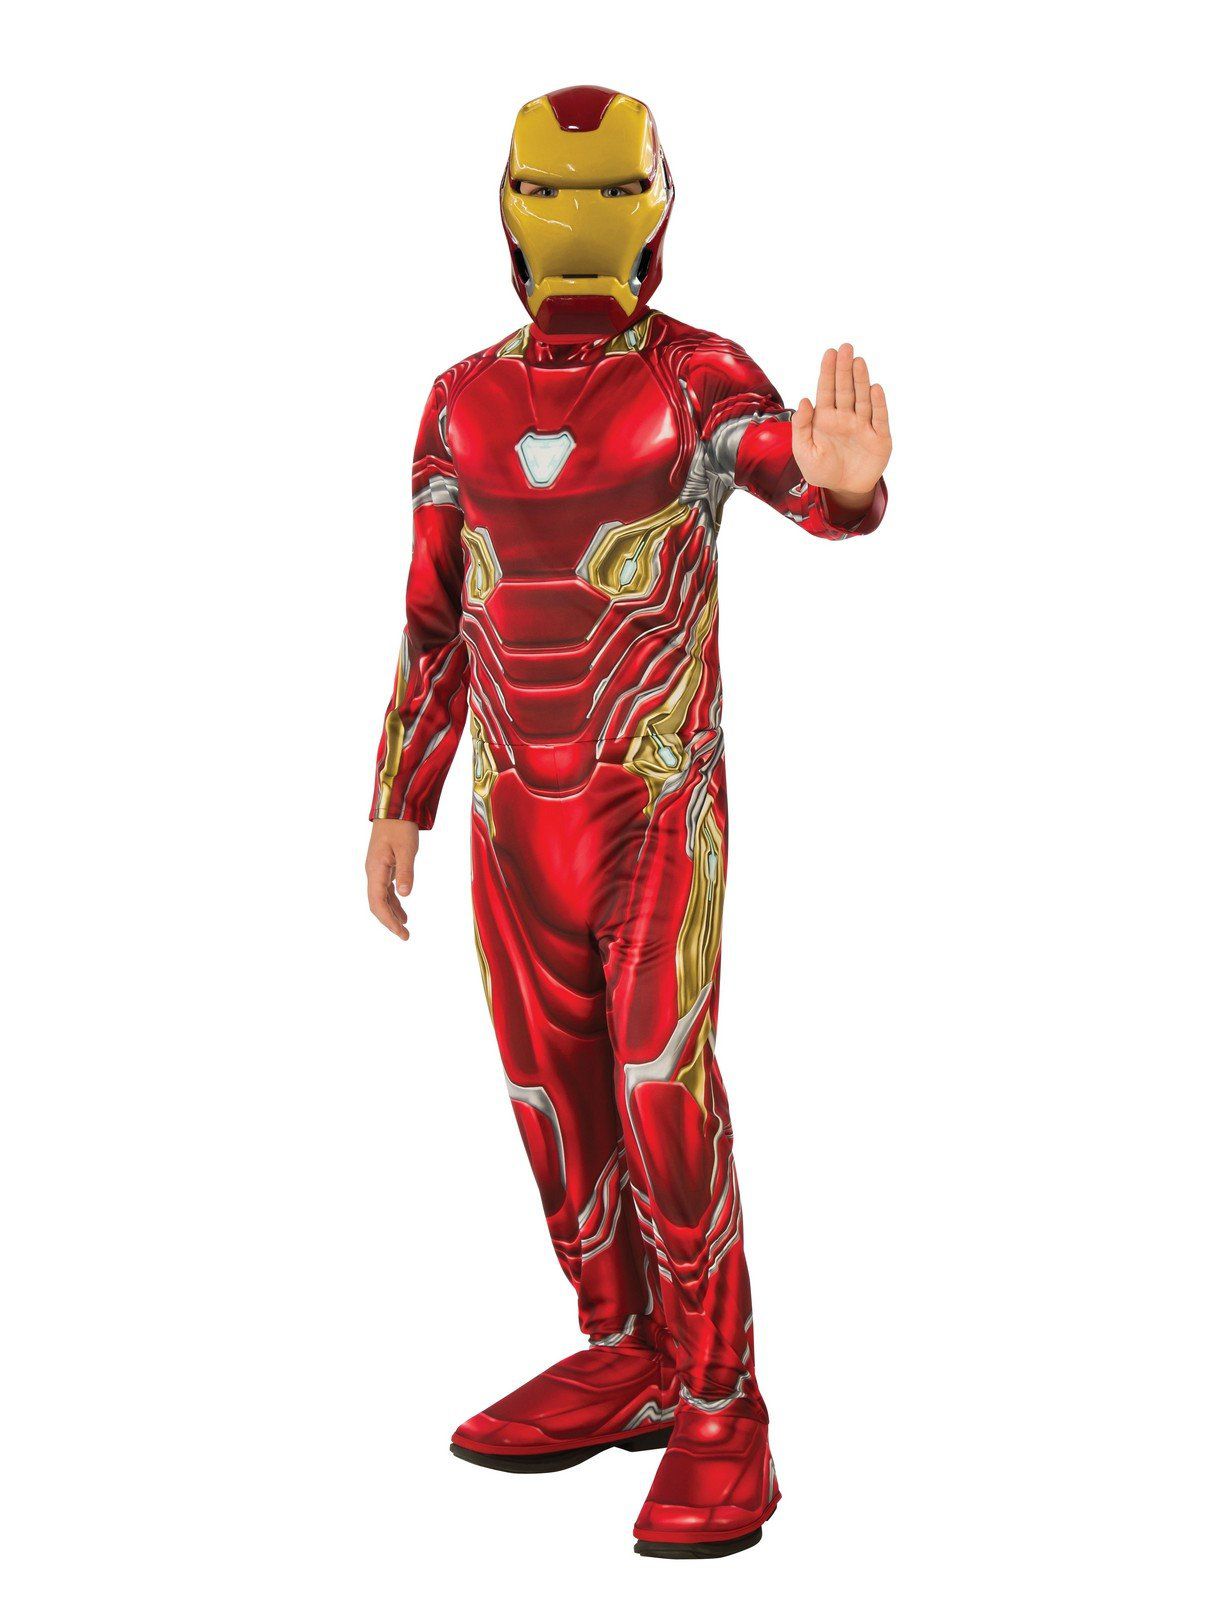 Boys Avengers: Endgame Iron Man Mark 50 Costume - PartyBell.com